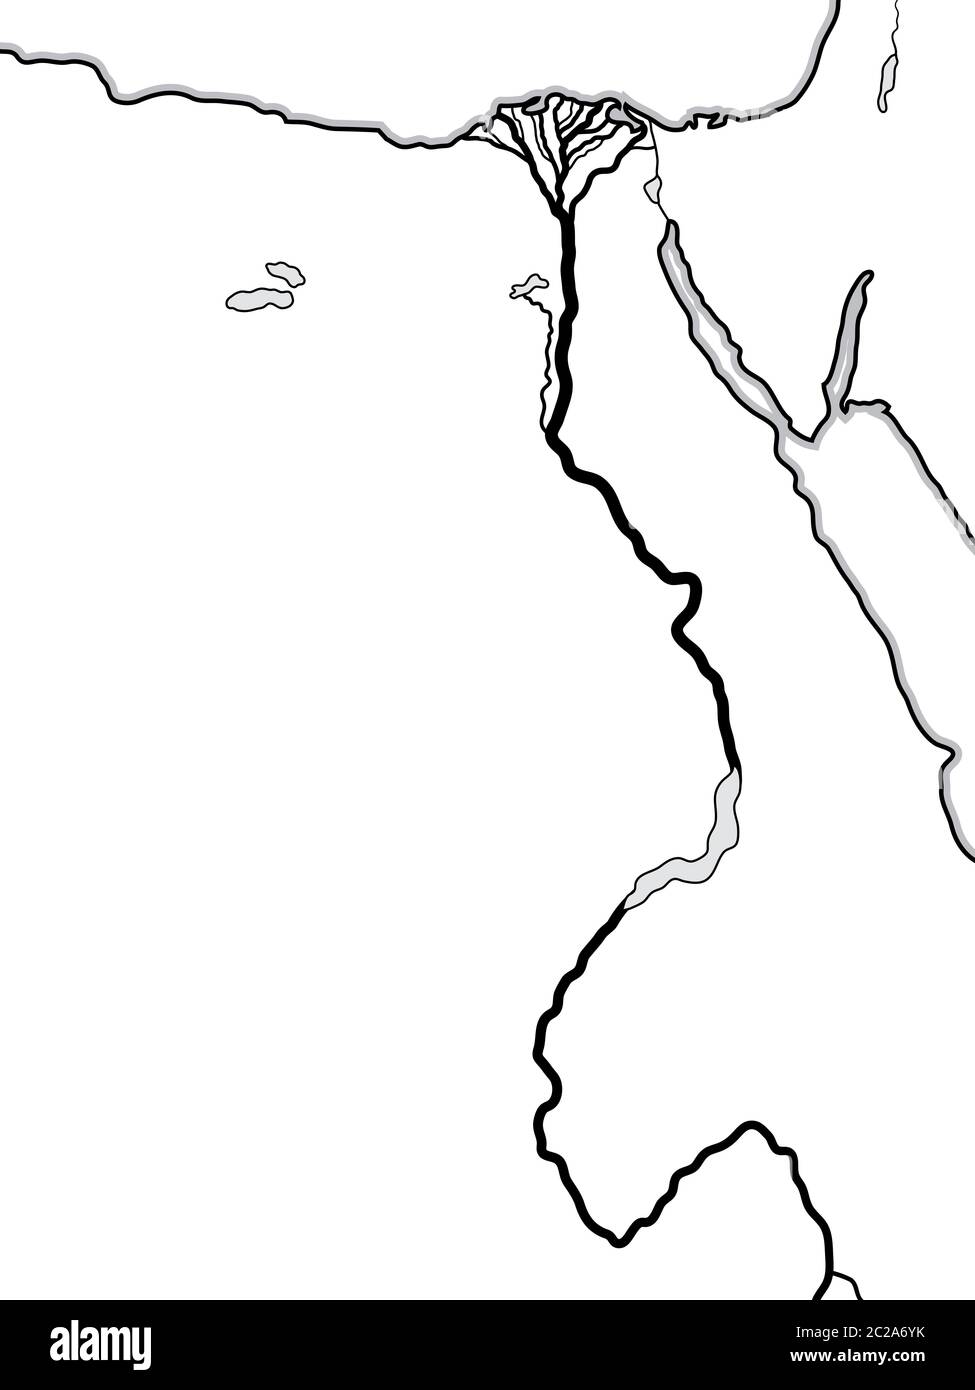 Carte du monde de L'ÉGYPTE et DE LA LIBYE : Afrique du Nord, Basse-Égypte et haute-Égypte, le Nil et son delta. Carte géographique. Banque D'Images